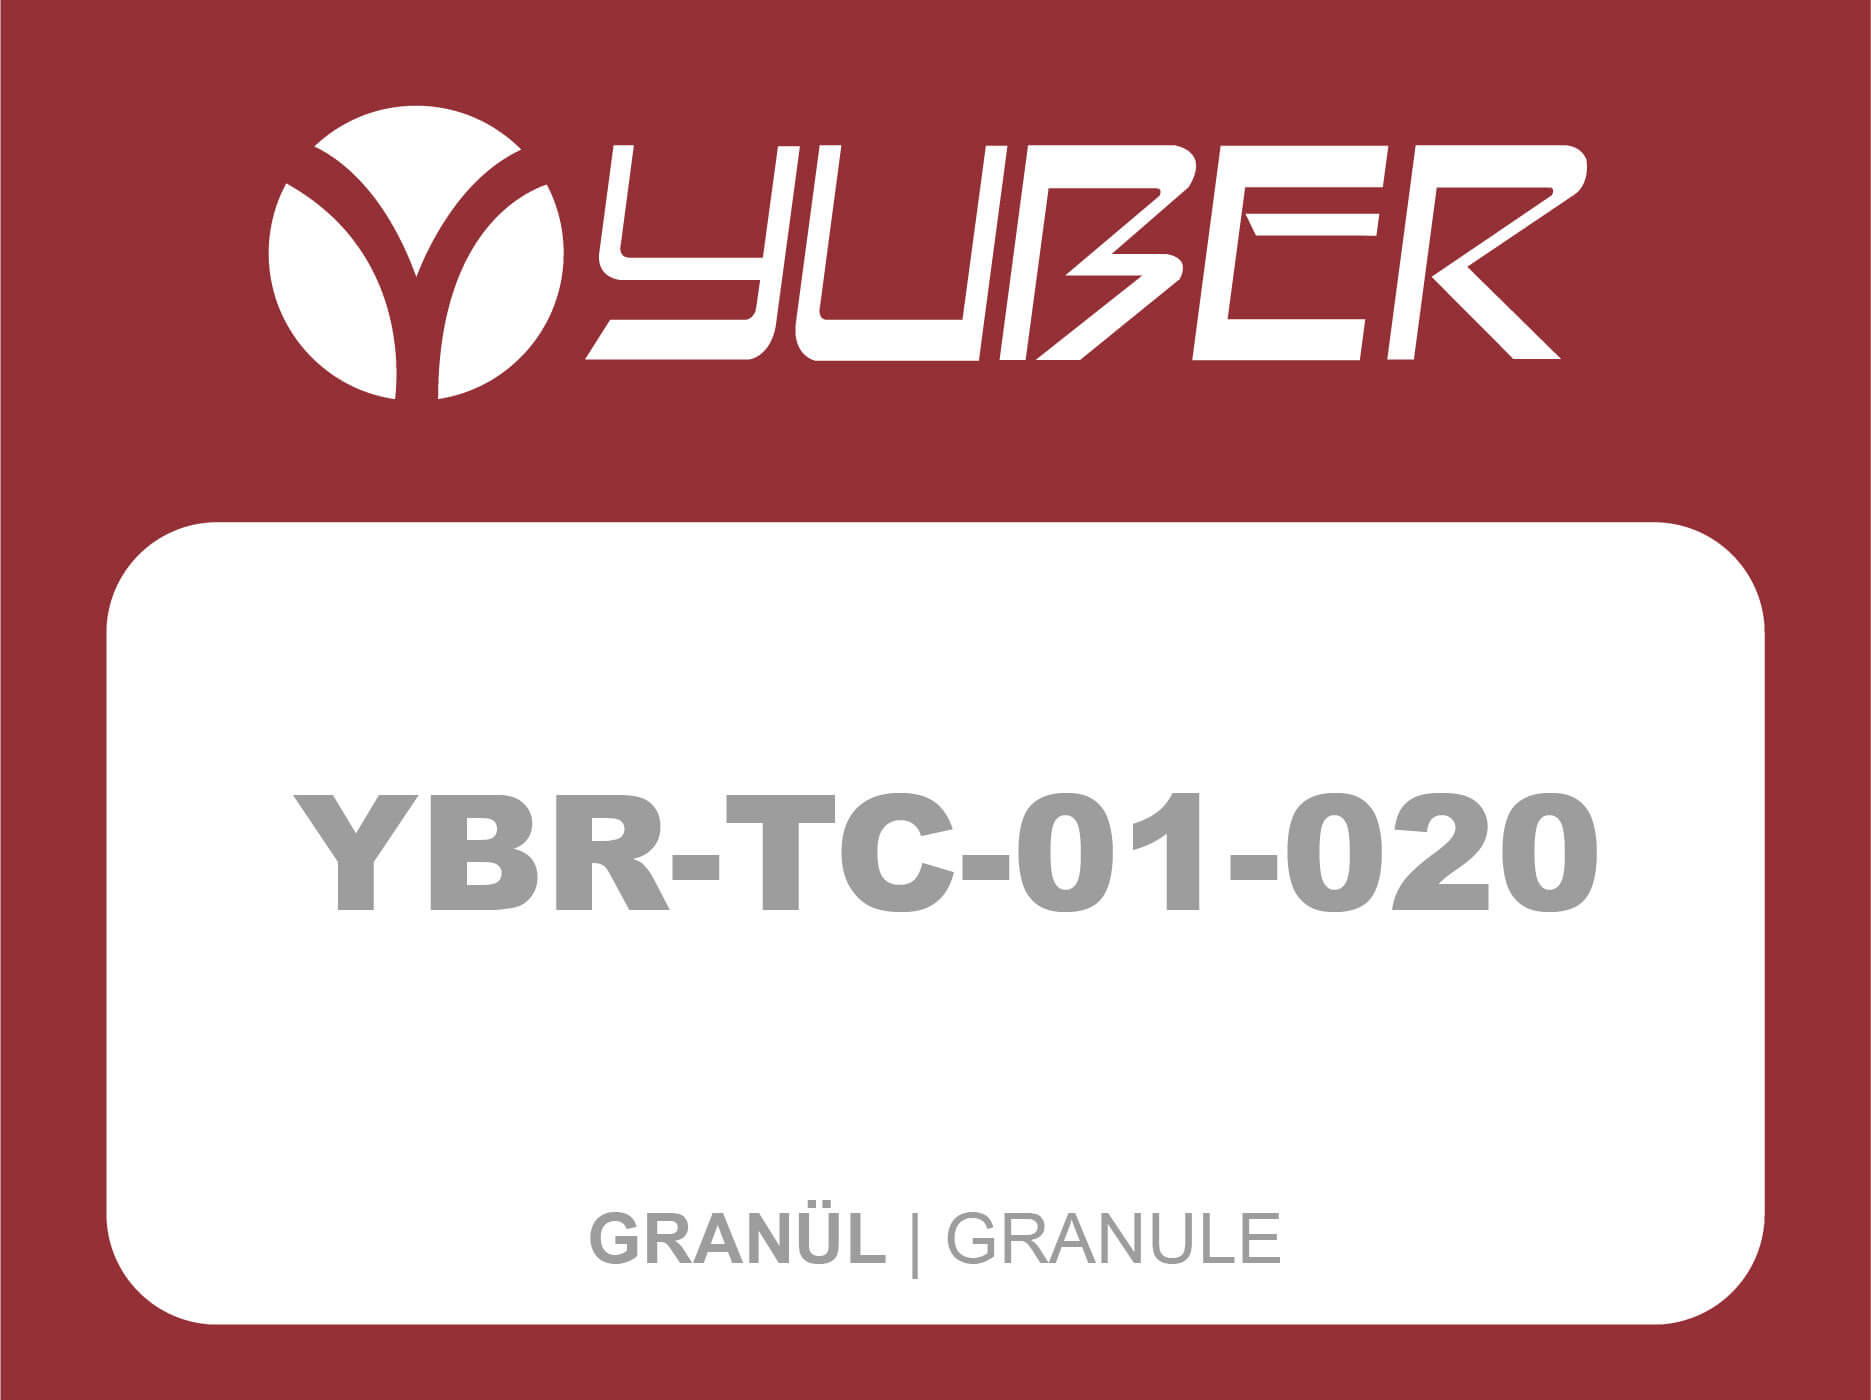 YBR TC 01 020 Granül Yuber Metalurji